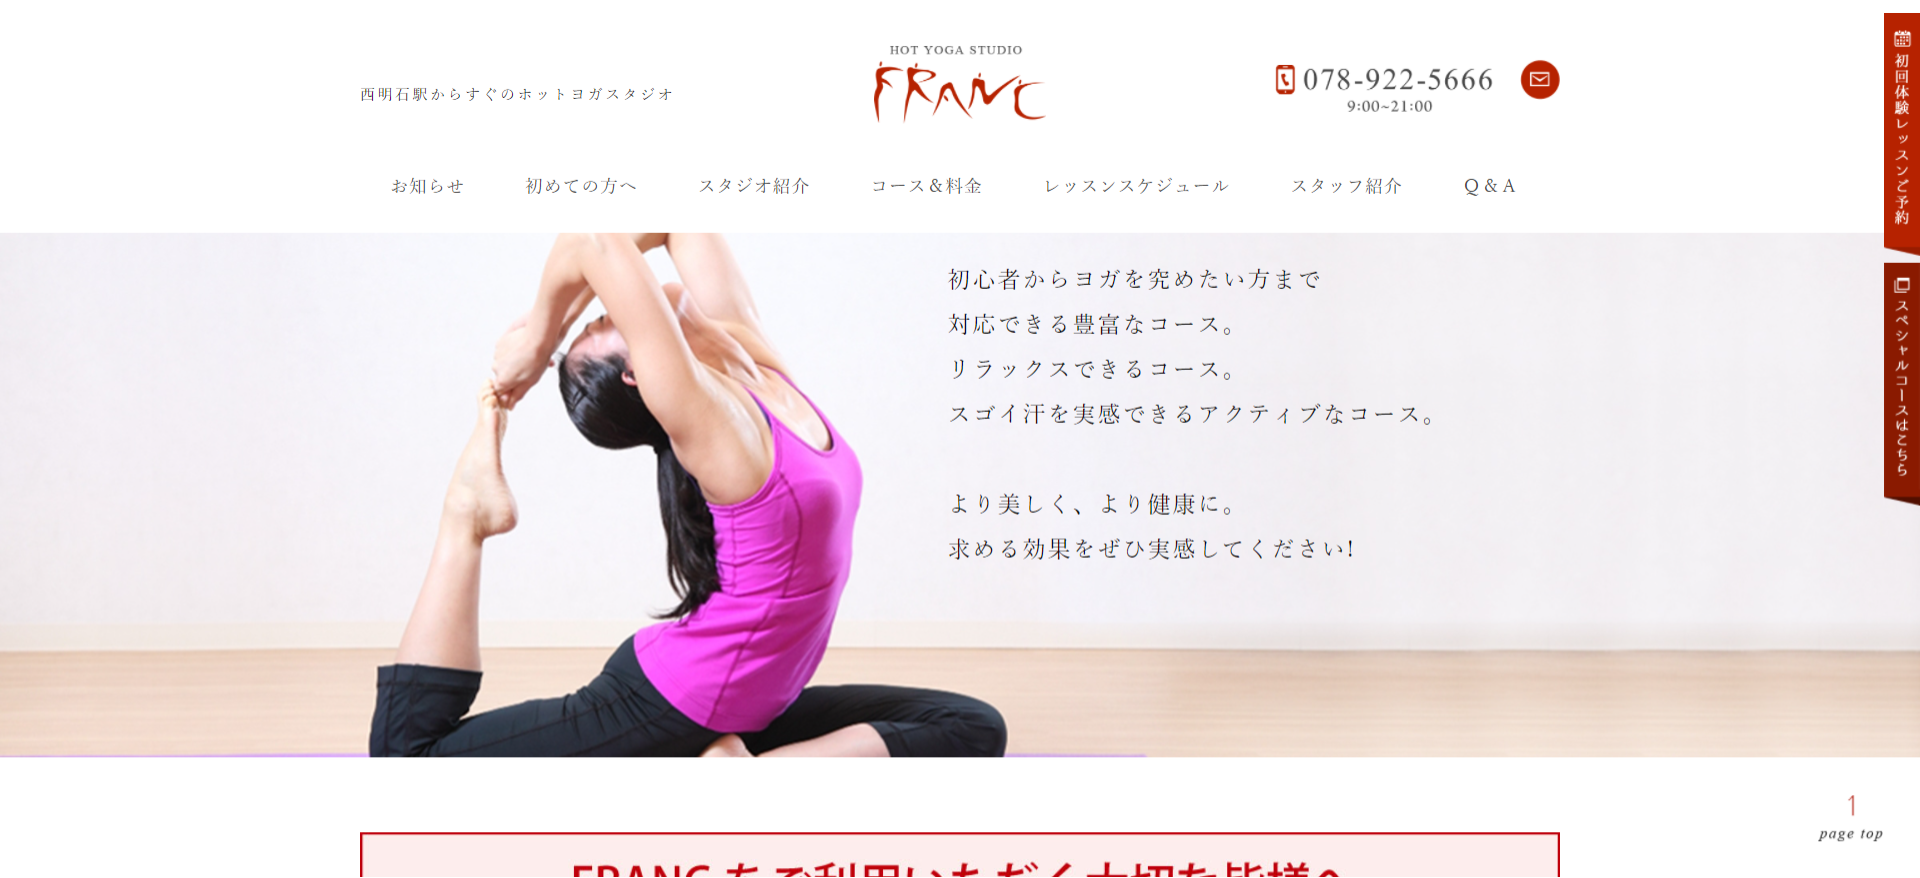 ホットヨガスタジオFranc(フラン)西明石店